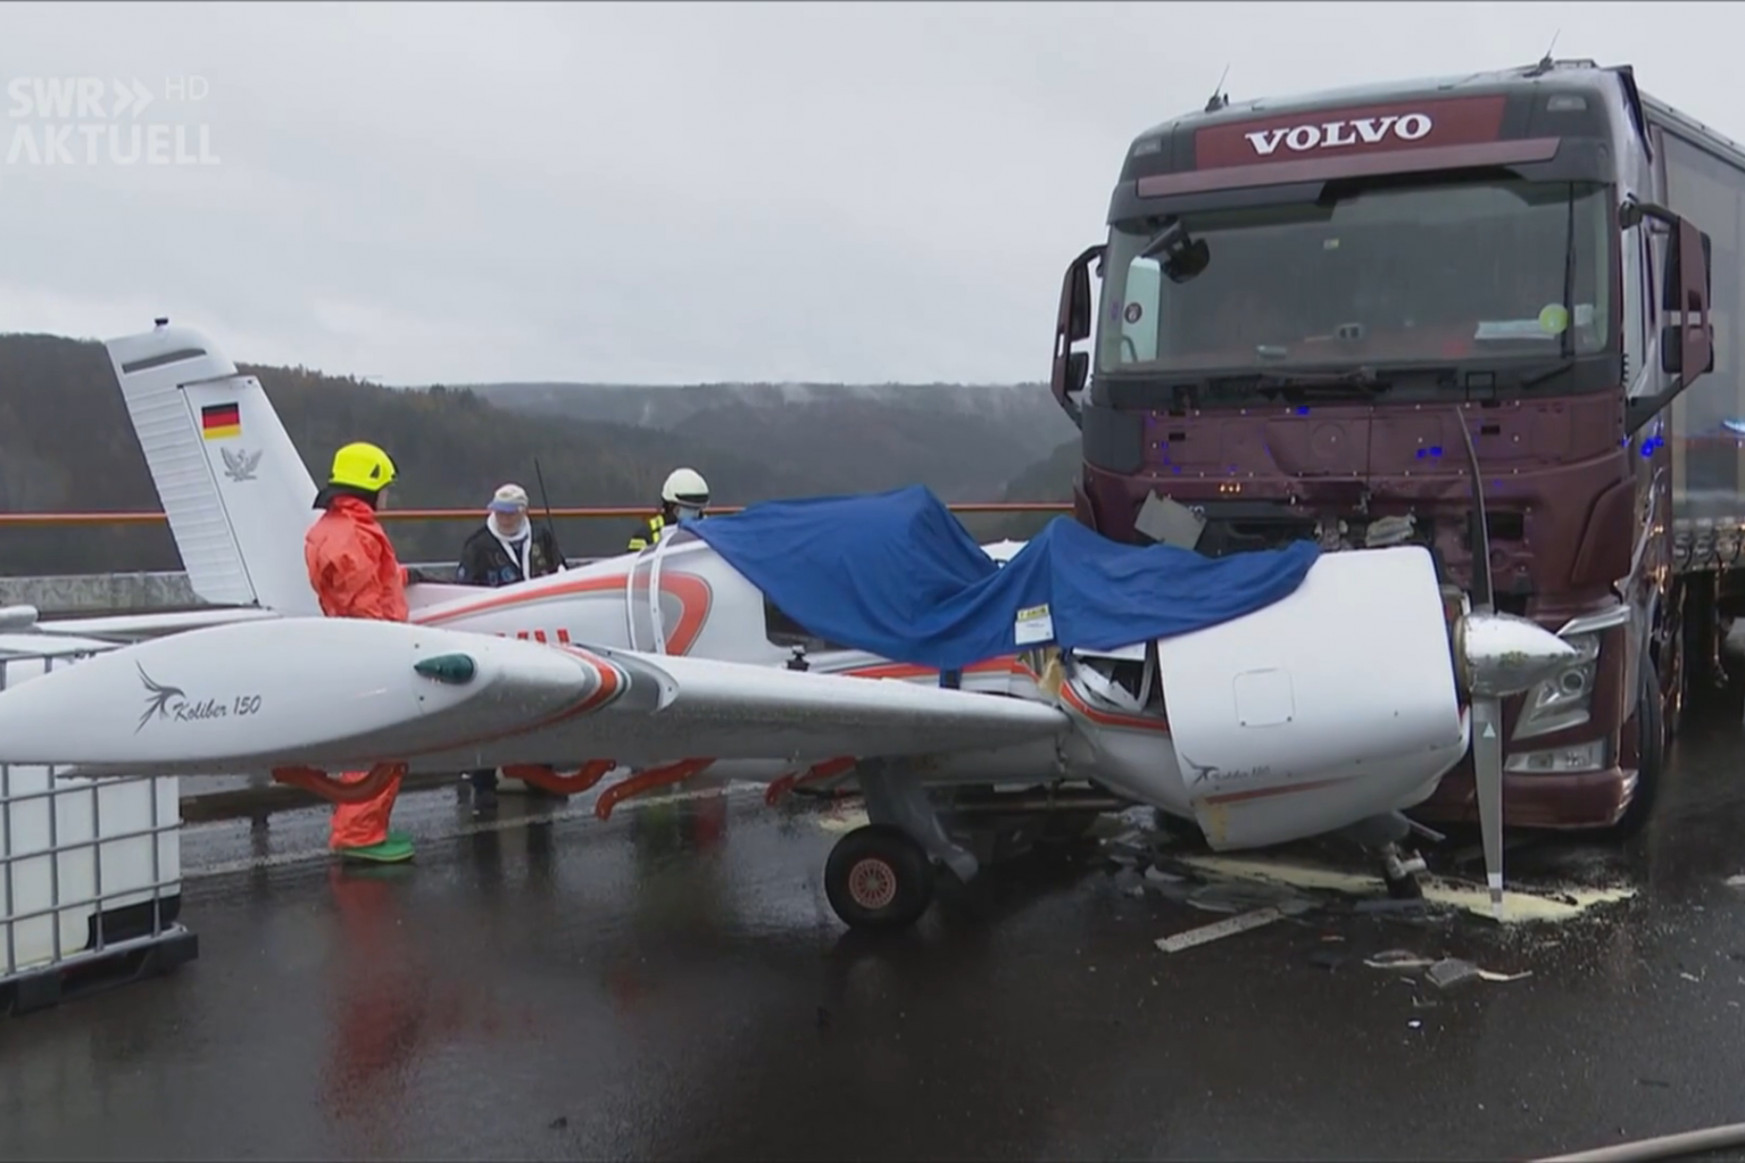 Egy kisgép egy autópályahídon hajtott végre kényszerleszállást a német hegyekben, ahol nekiütközött egy kamion